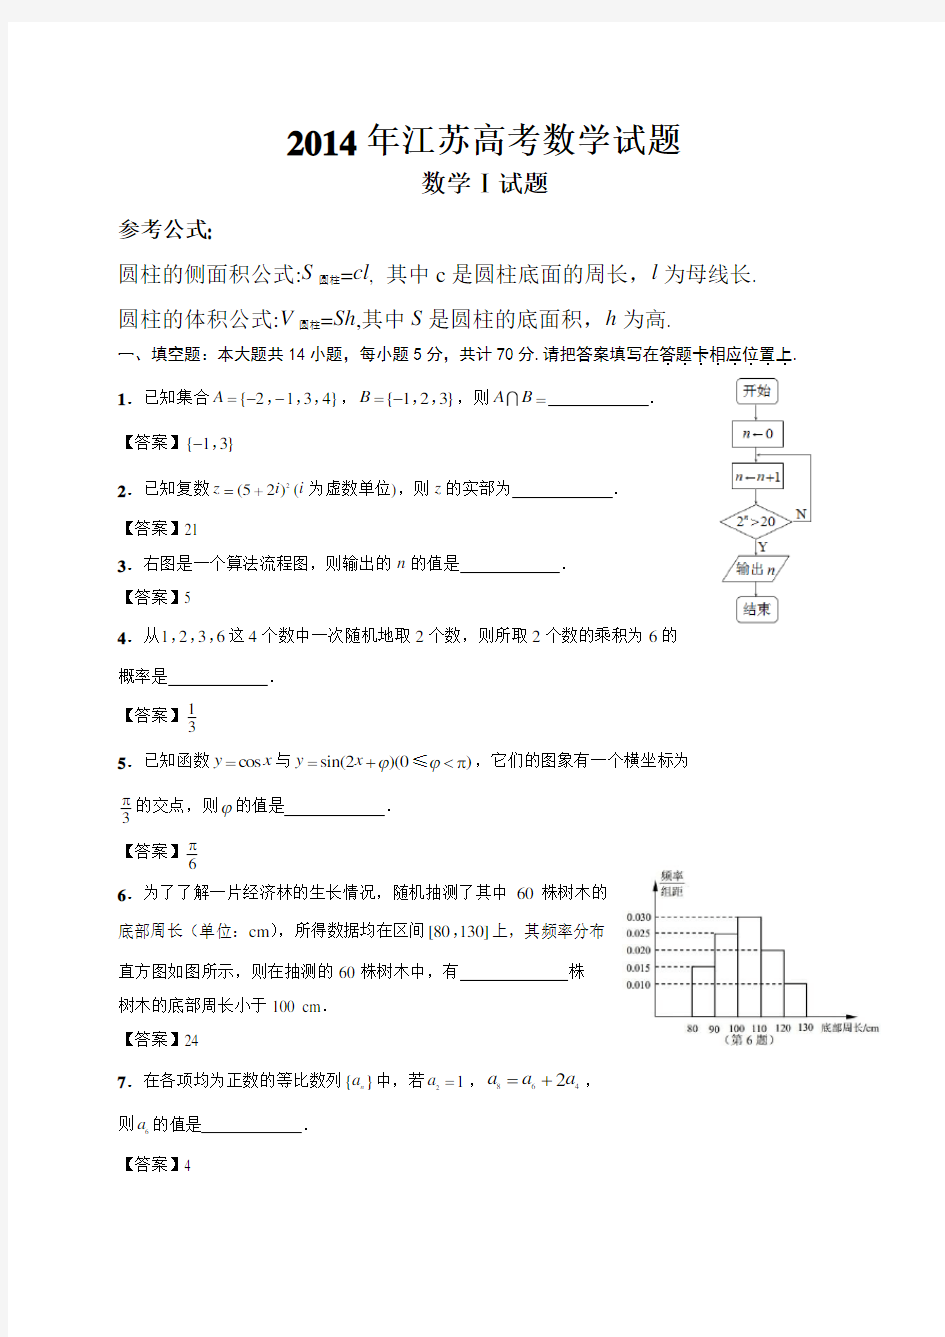 2014年江苏高考数学试题及详细答案(含附加题)